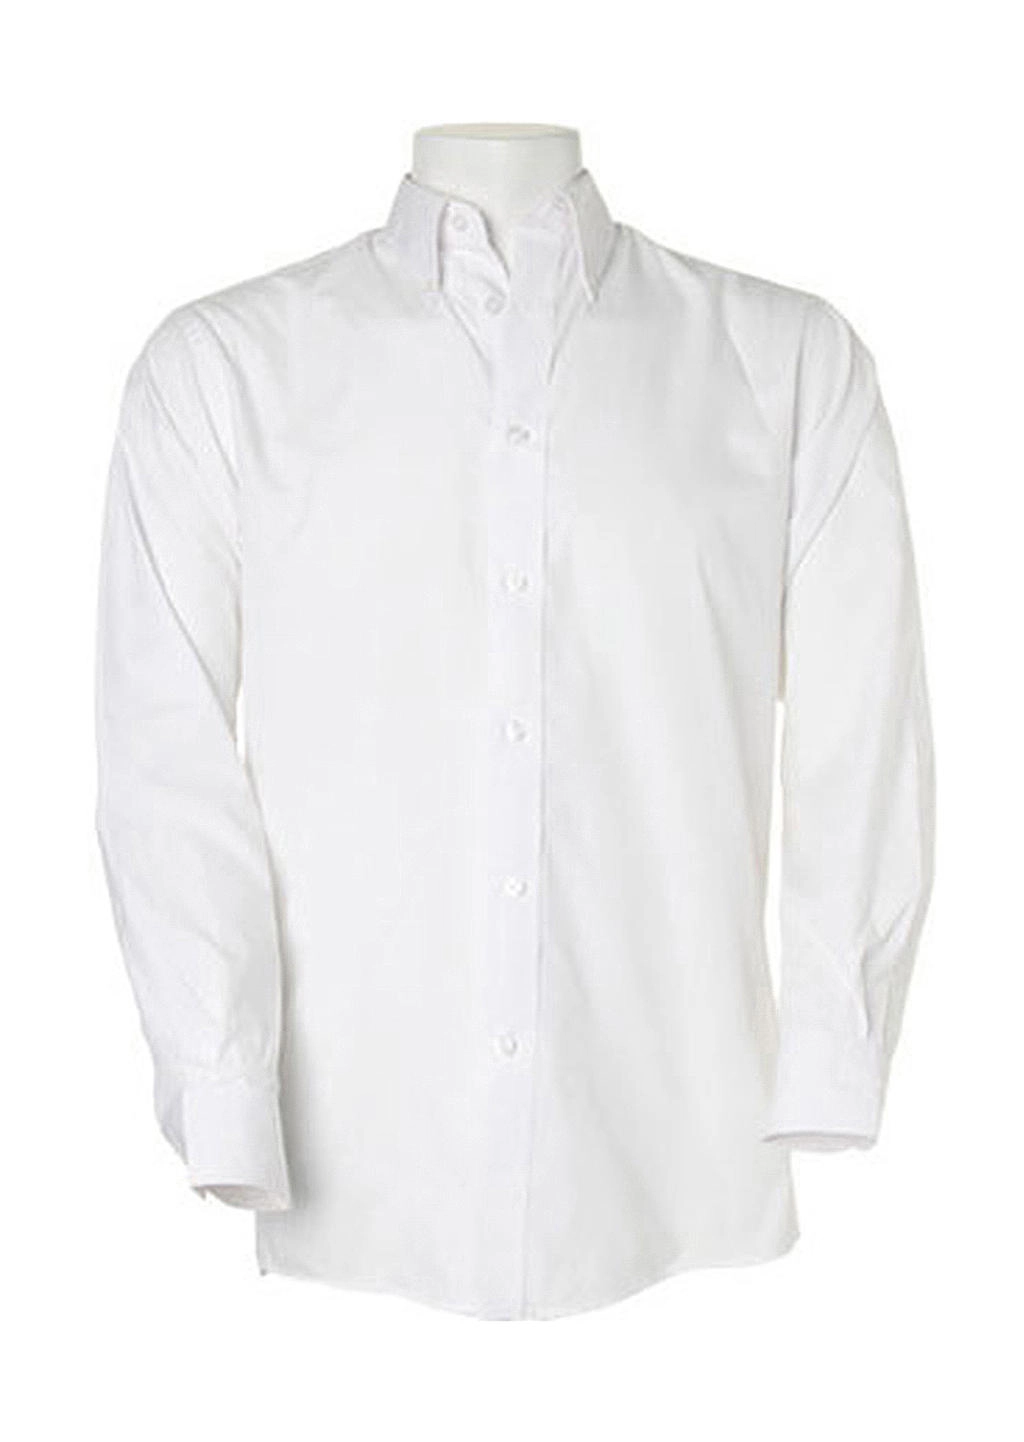 Classic Fit Workforce Shirt zum Besticken und Bedrucken in der Farbe White mit Ihren Logo, Schriftzug oder Motiv.